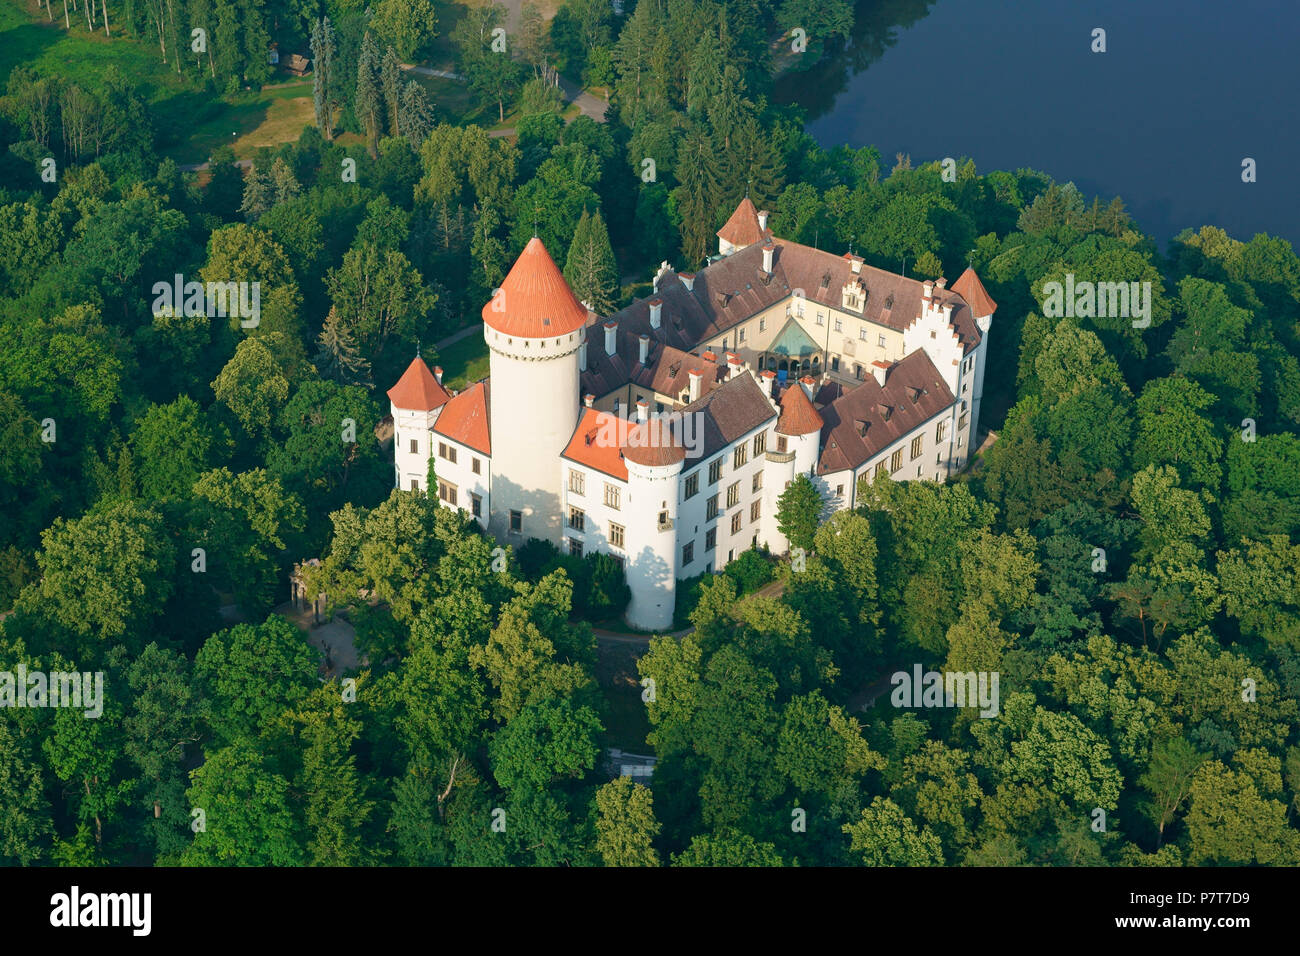 VISTA AEREA. Castello medievale in una zona boscosa. Castello di Konopiště, Benešov, Regione Boema Centrale, Repubblica Ceca. Foto Stock